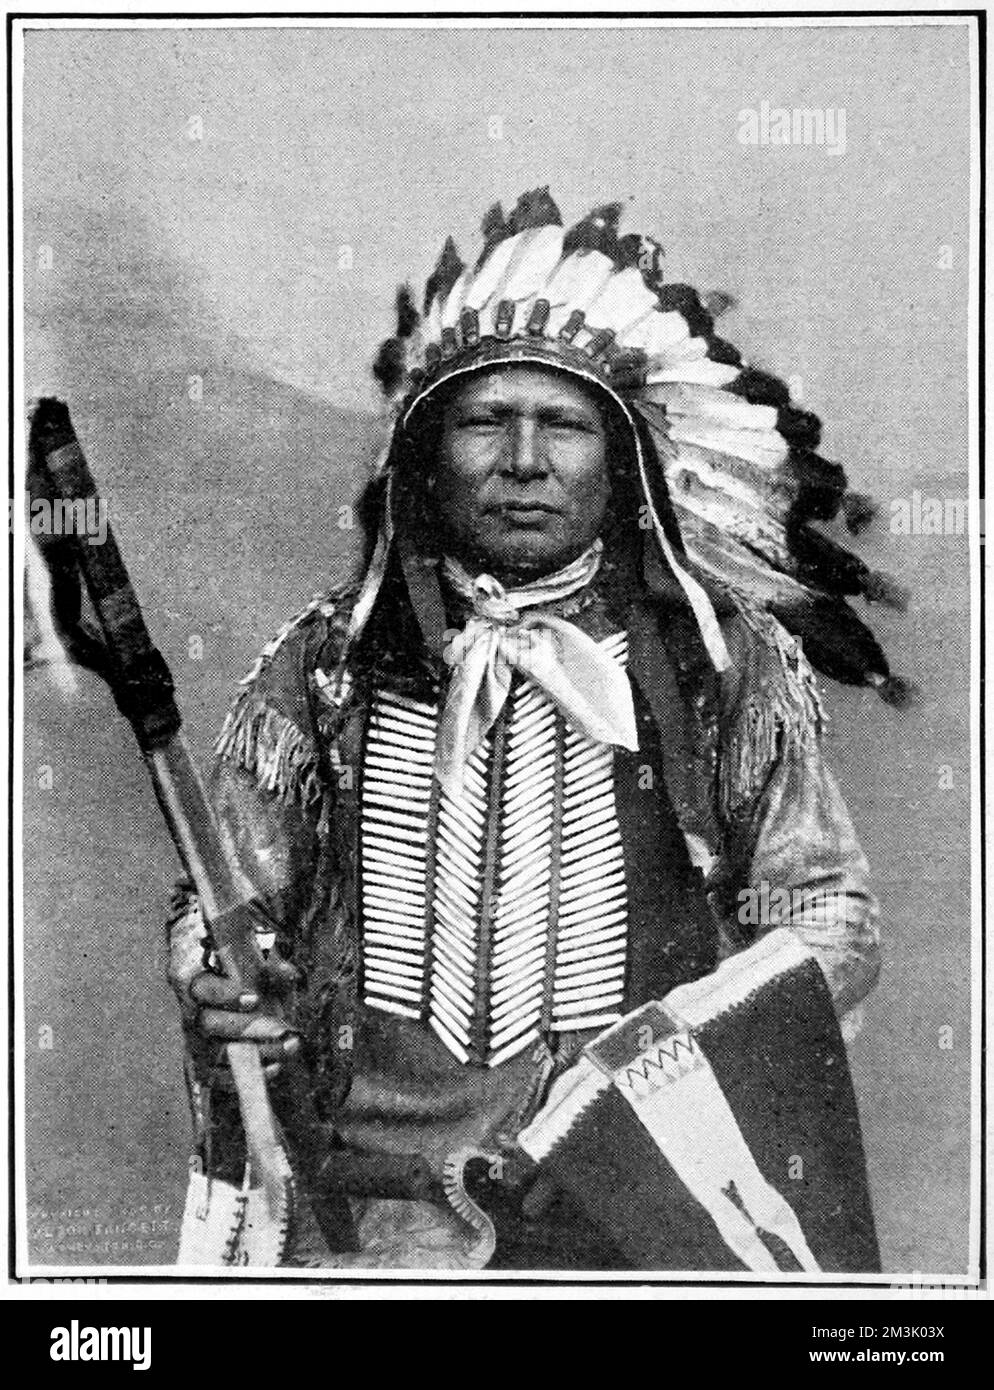 In all ihrer Kriegsbemalung, Chiefs des verschwundenen Sioux-Stammes. Die Sioux waren ursprünglich der wichtigste Stamm in Dakota. 1851 hatten sie fast ihr gesamtes Land verloren. Ihr letzter großer Aufstieg war 1876, als sie die Amerikaner unter ihrem großen Chief Sitting Bull herausforderten Datum: 1905 Stockfoto